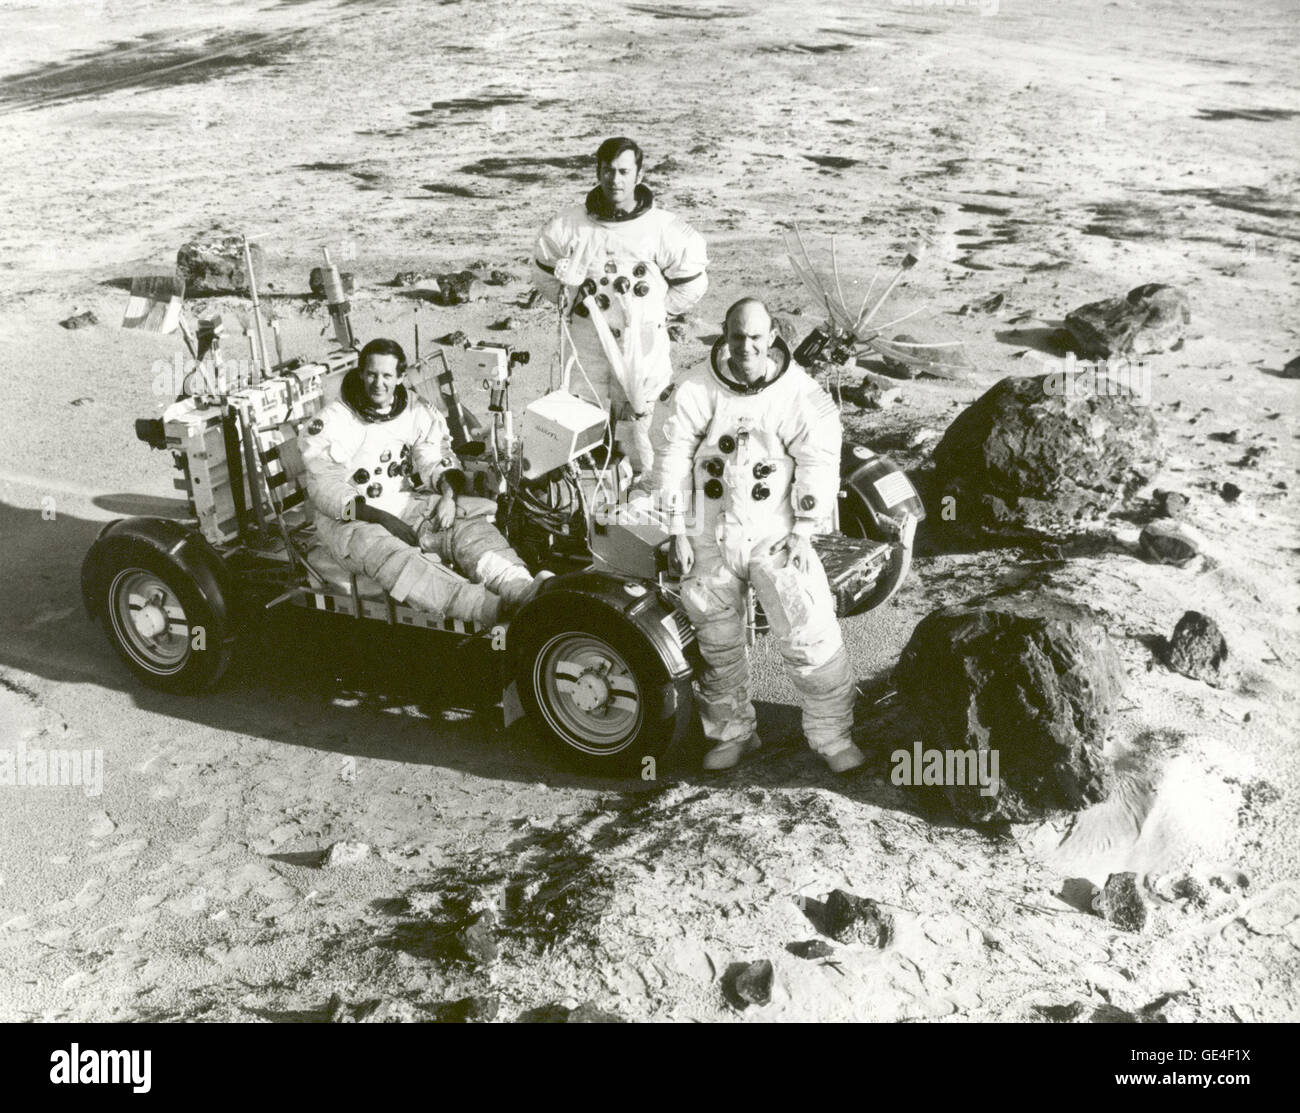 Astronauten der Apollo 16 (von links nach rechts), Lunar Module Pilot Charles M. Duke, Commander John W. Young und Command Module Pilot Thomas K. Mattingly II während einer Übung in Vorbereitung auf die Landung Mondmission.  Bild-Nr.: 72-h-249 Datum: 6. Februar 1972 Stockfoto